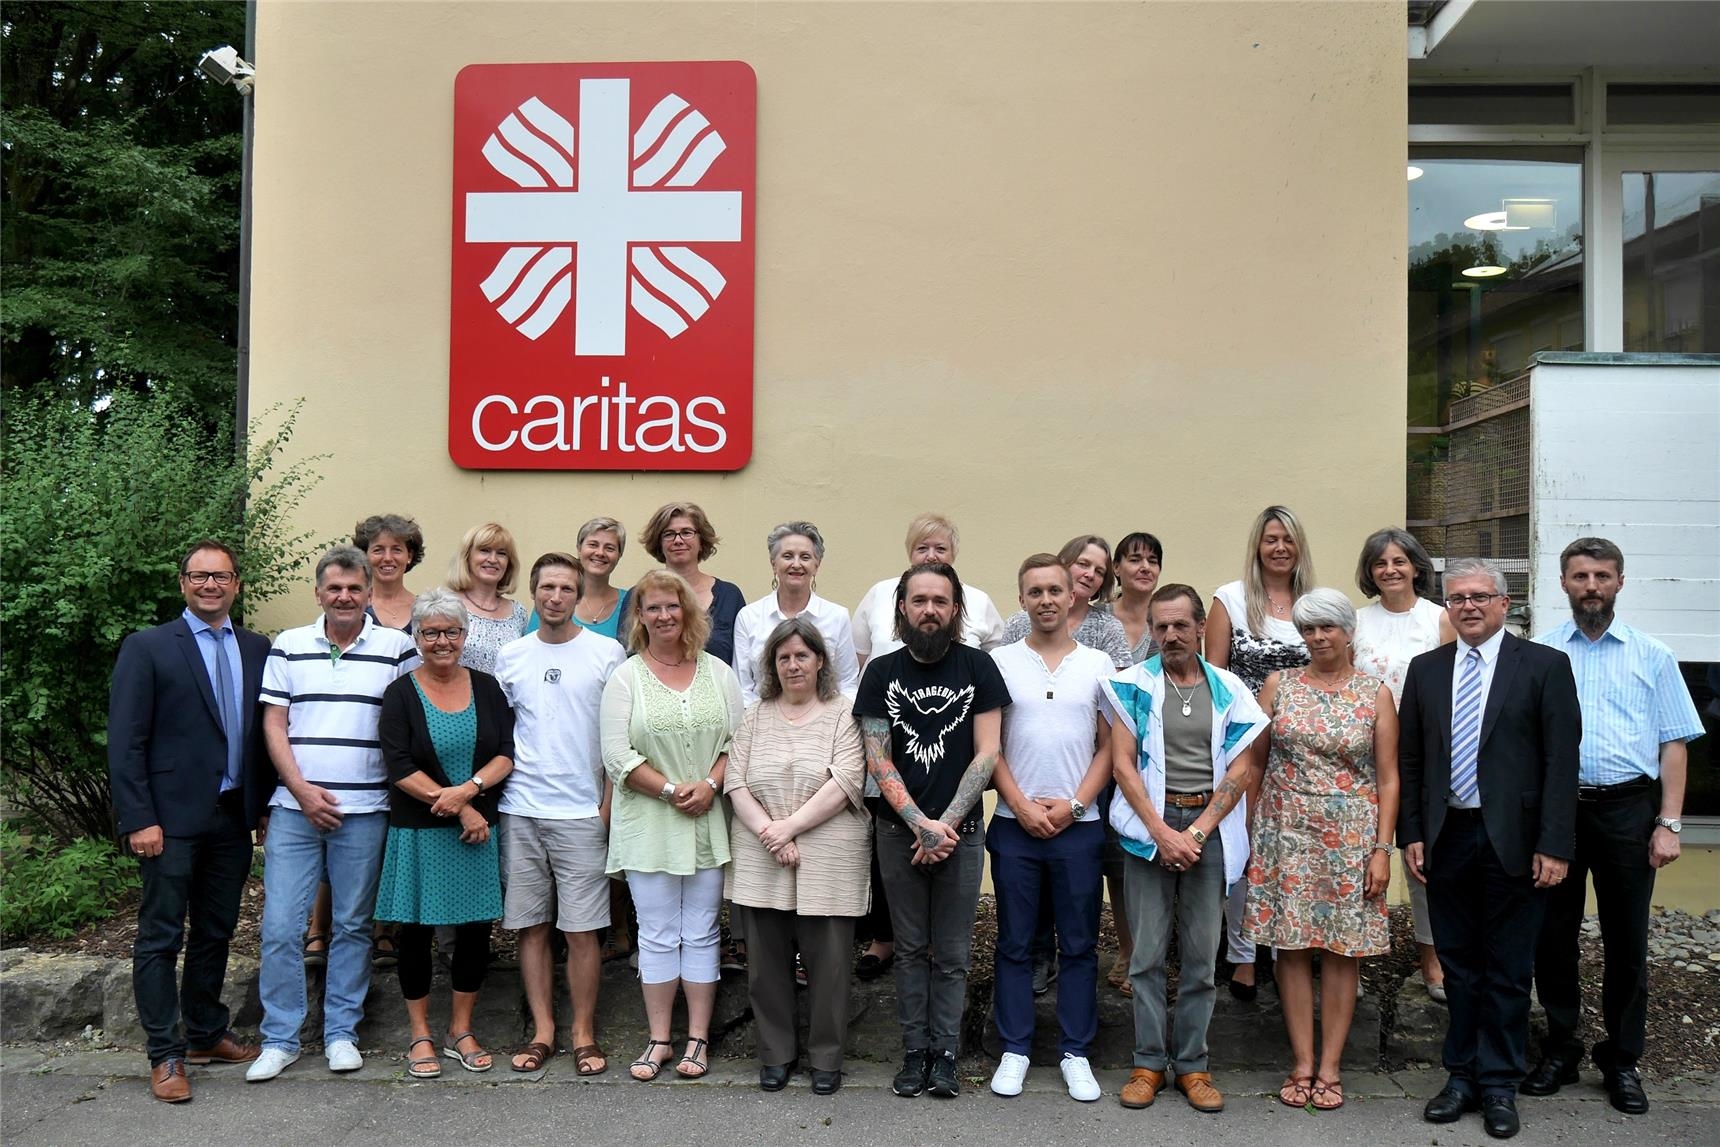 Die Dienst-Jubilare der Caritas Konstanz mit den Vorständen Matthias Ehret und Andreas Hoffmann zum Gruppenbild vor dem Konradihaus. (Caritas Konstanz)